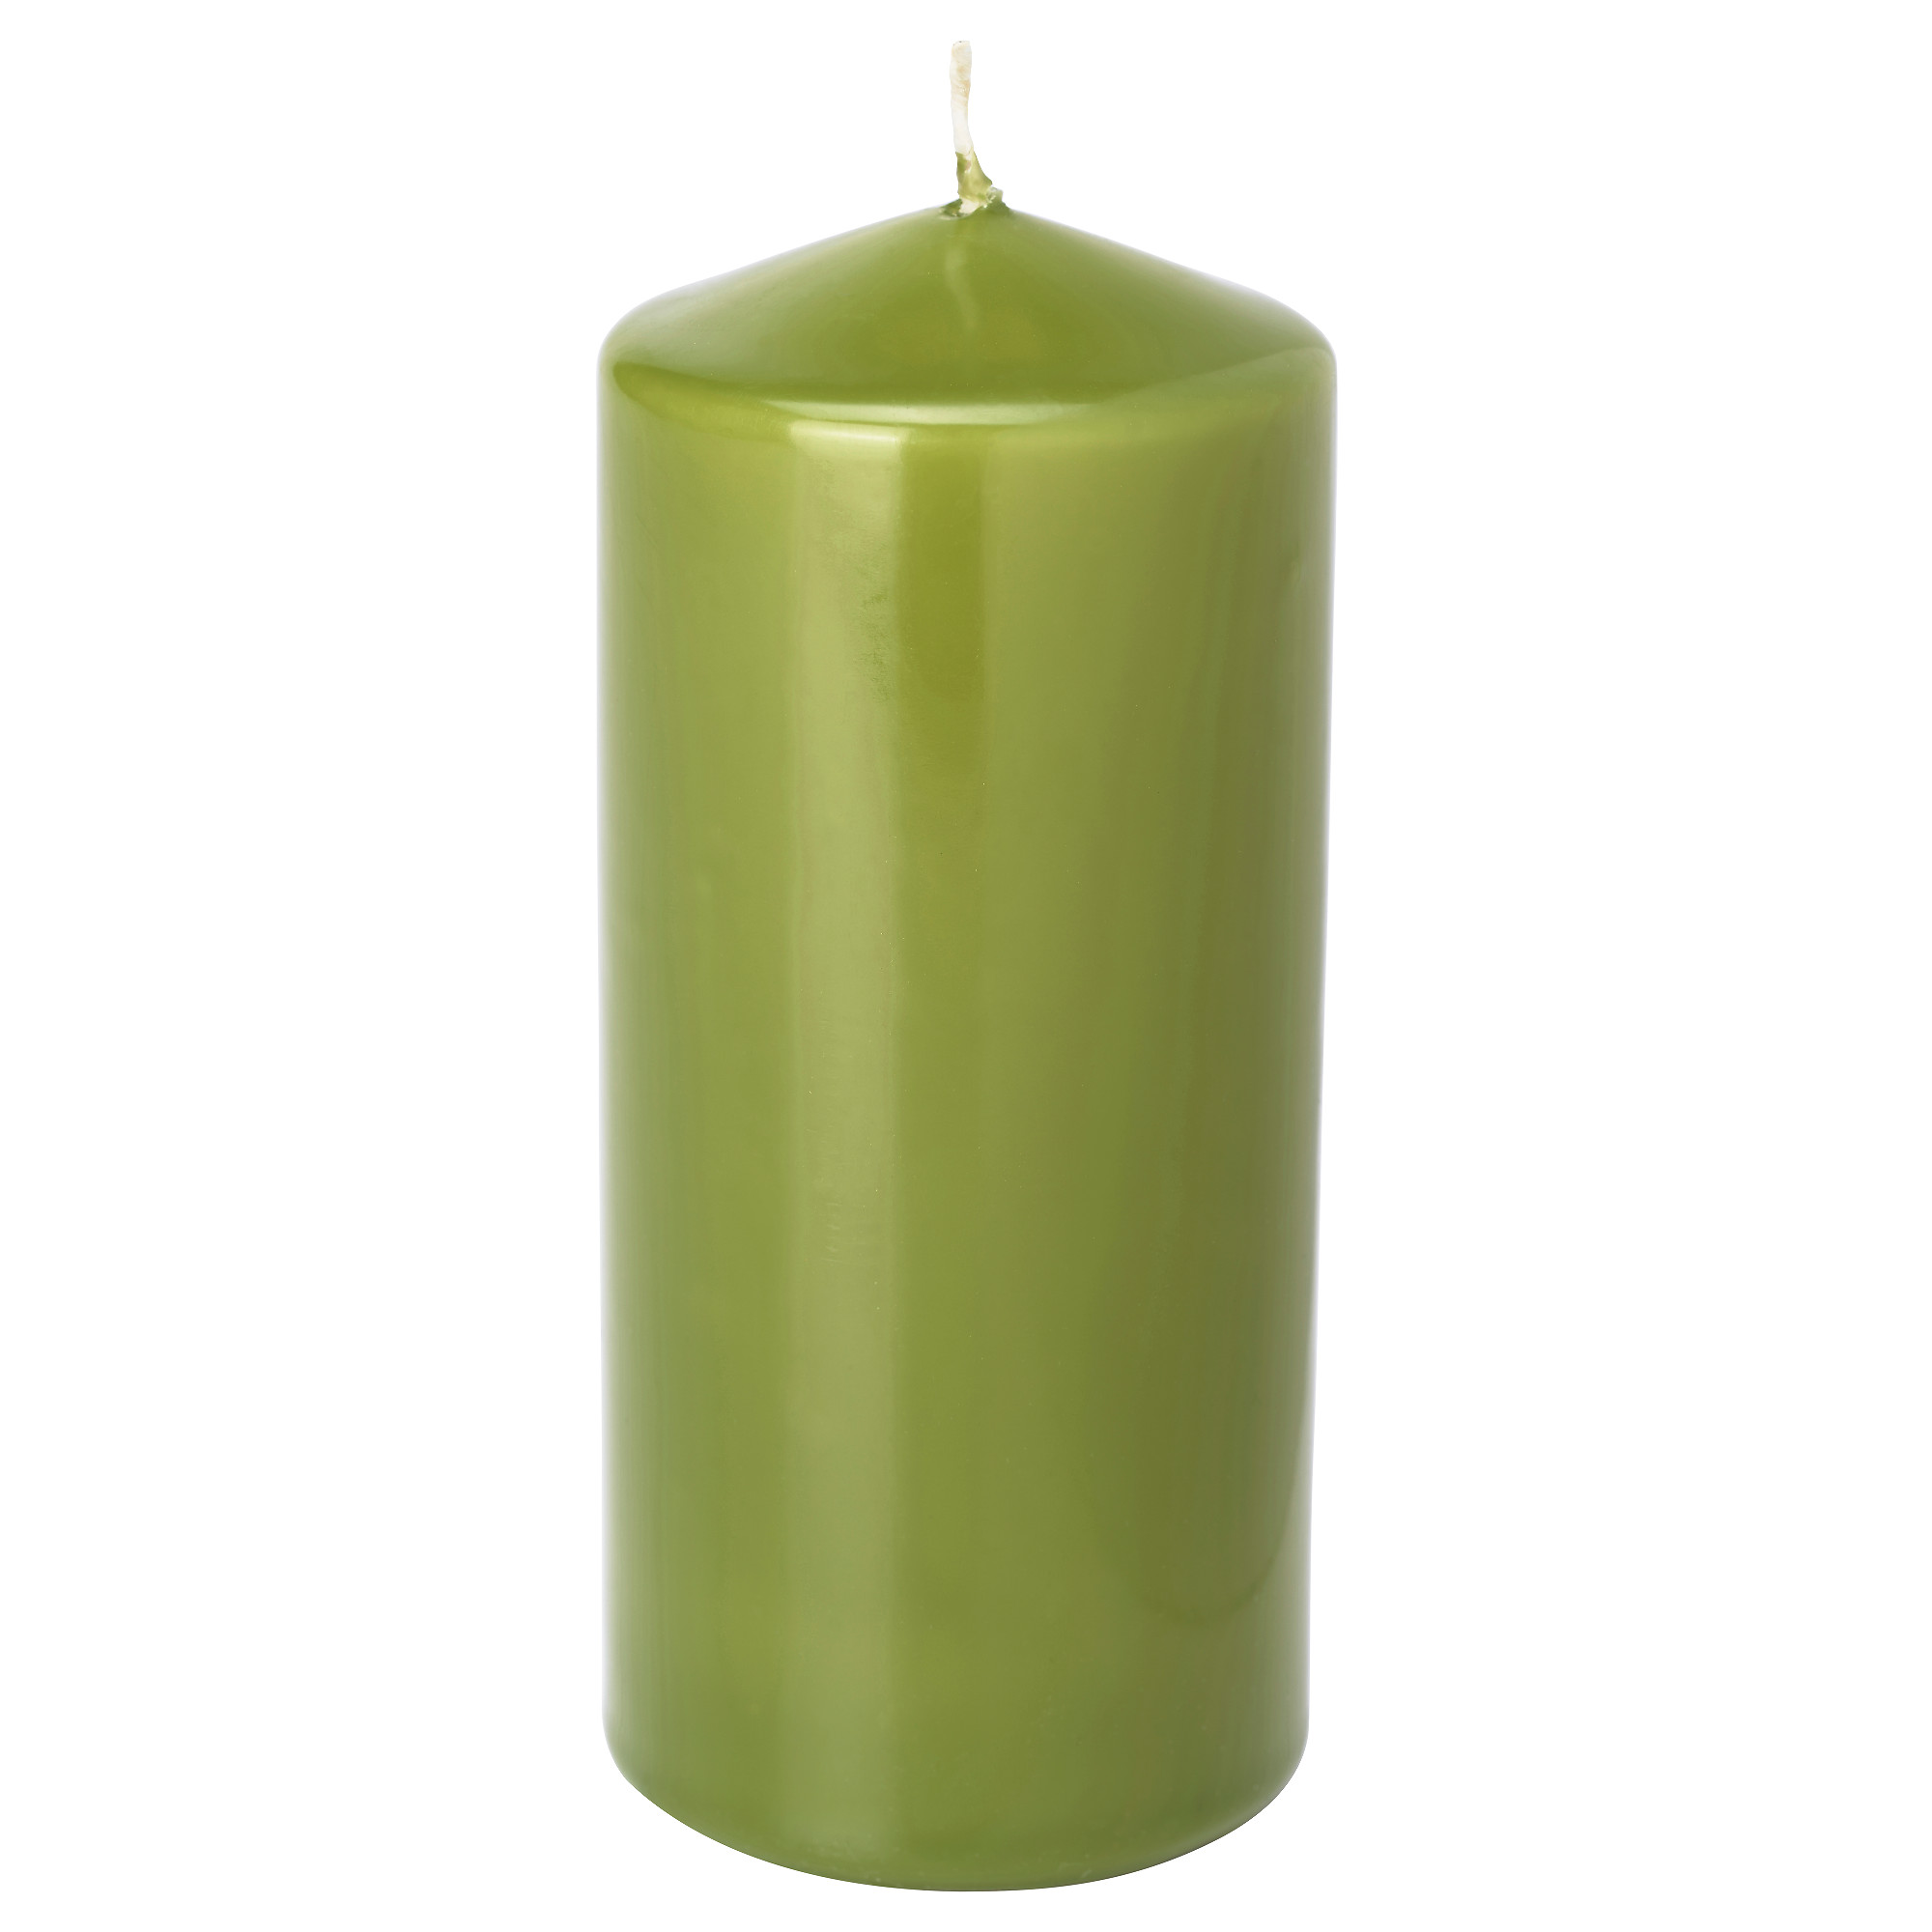 Свечи зеленого цвета. Свеча зеленая. Формовые свечи. Икеа зеленые свечи. Ikea свеча зеленая.